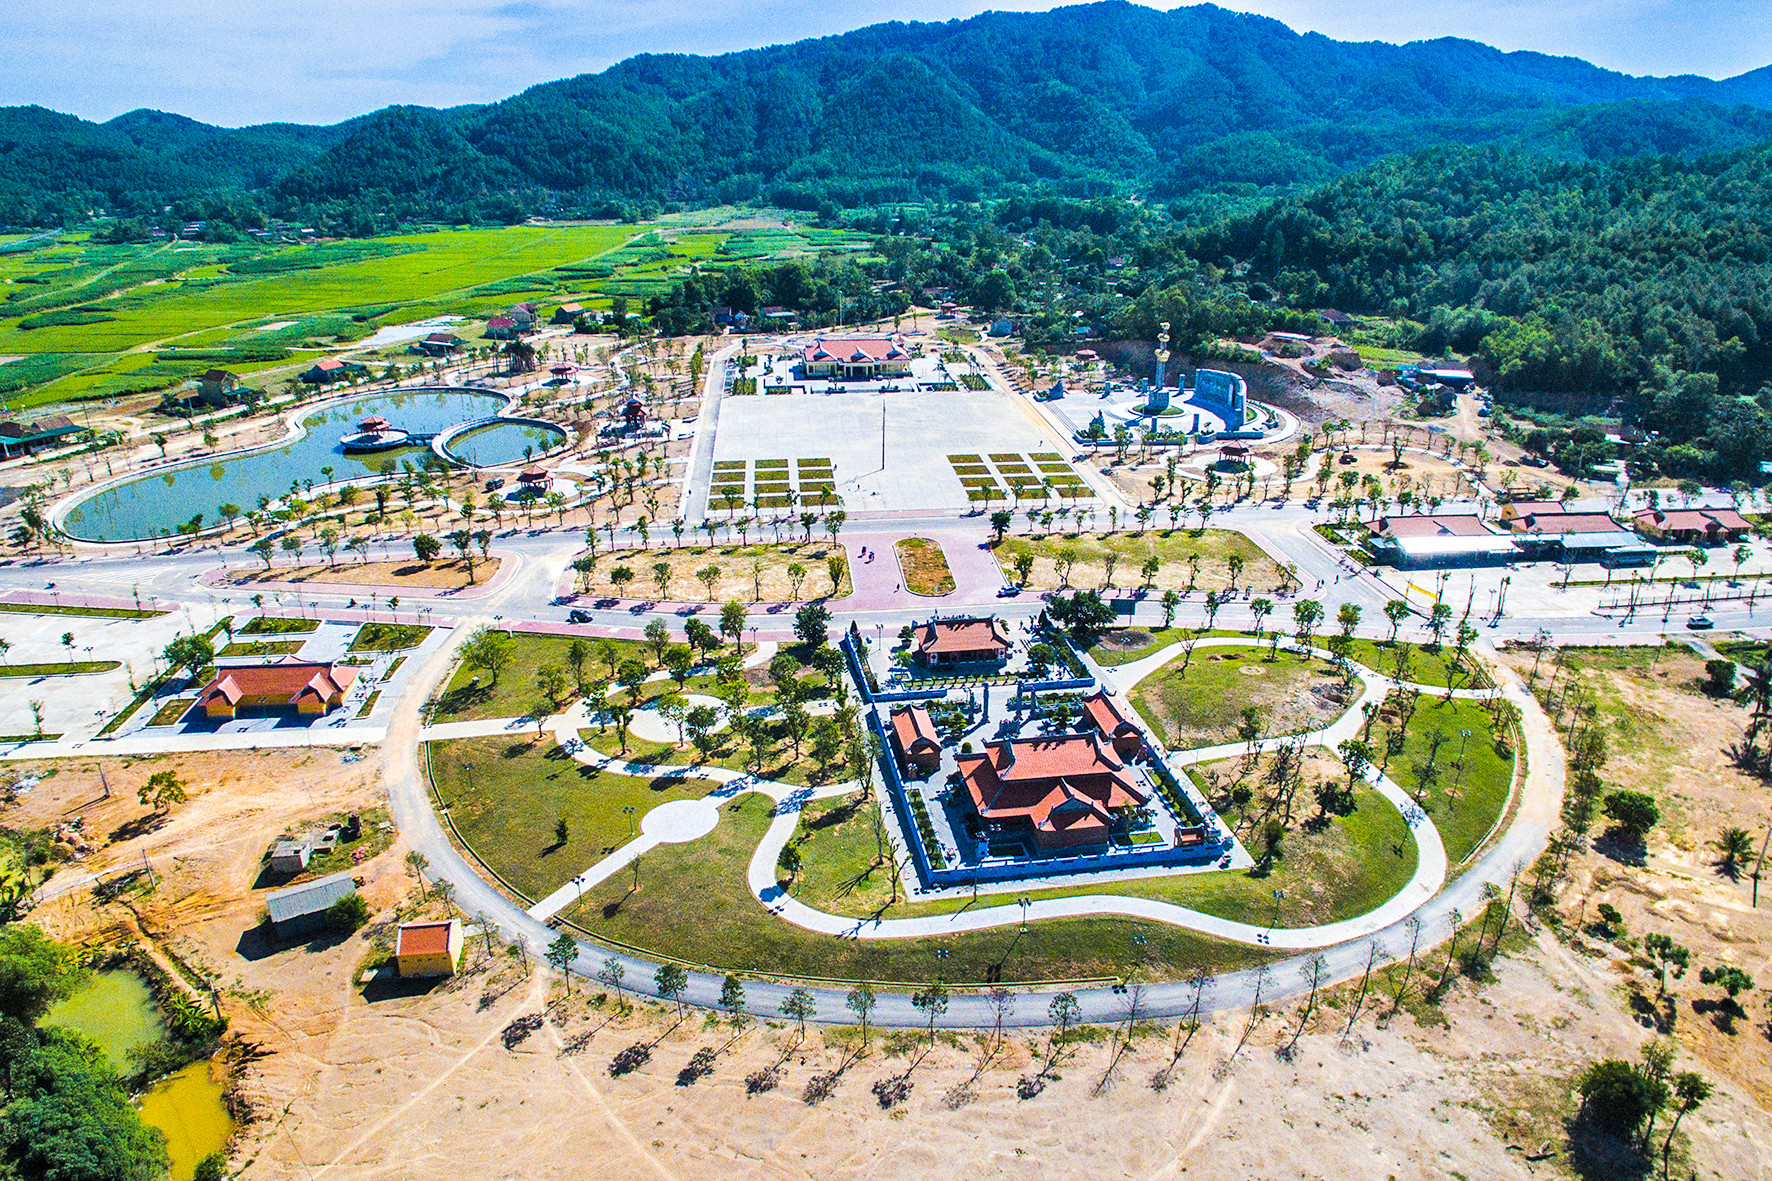 Khu di tích Truông Bồn - một trong những điểm đến tiêu biểu trong tour du lịch văn hóa, lịch sử tâm linh dọc 4 tỉnh Bắc miền Trung. Ảnh: Sỹ Minh